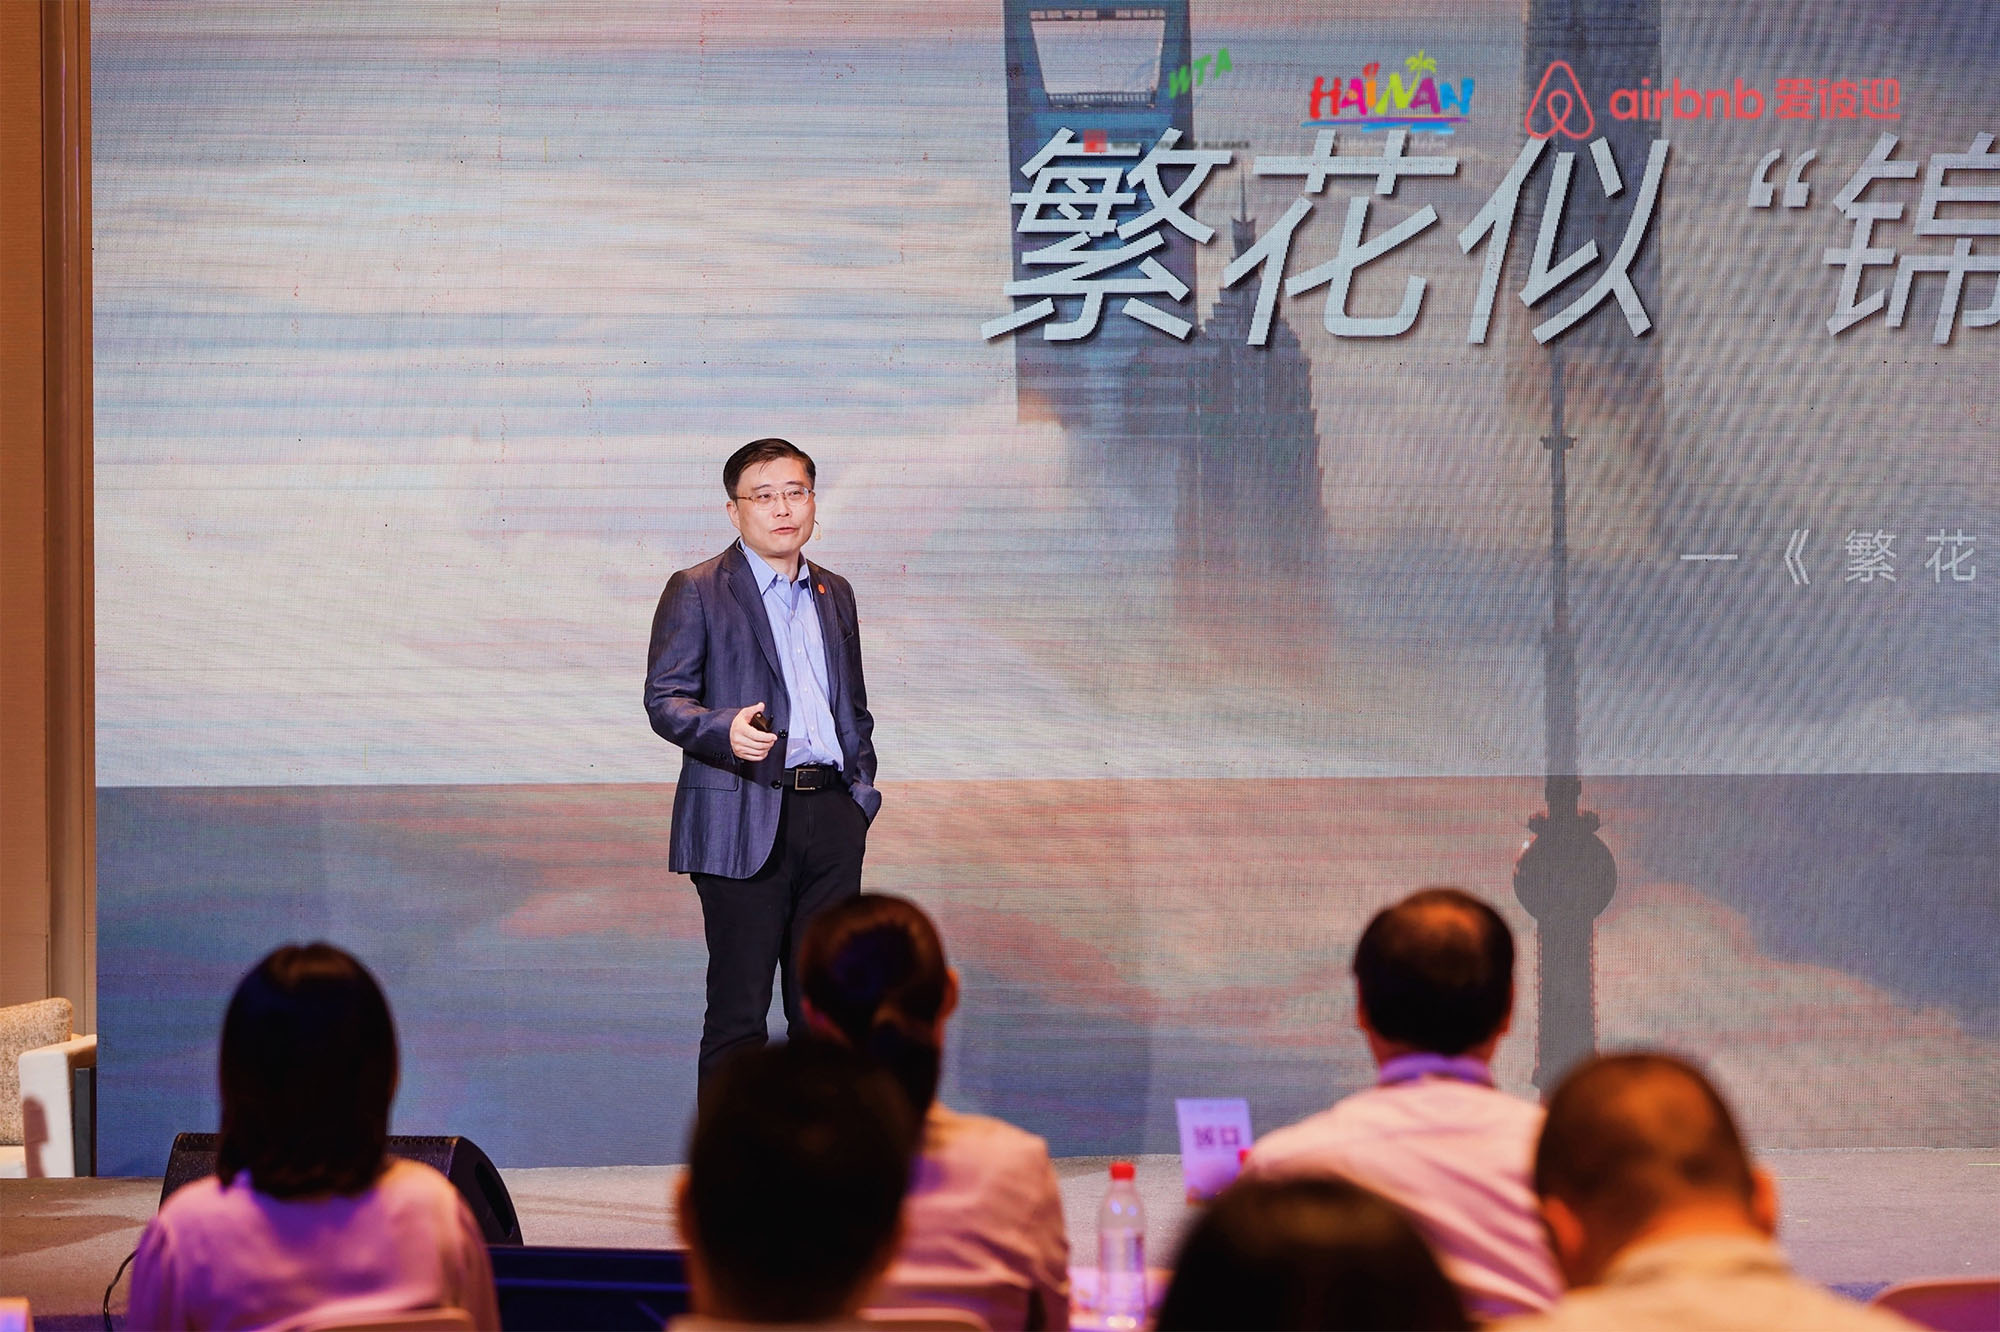 ZHOU Dongxiao, Vice Chairman of Shanghai Jinjiang International Travel Co., Ltd.